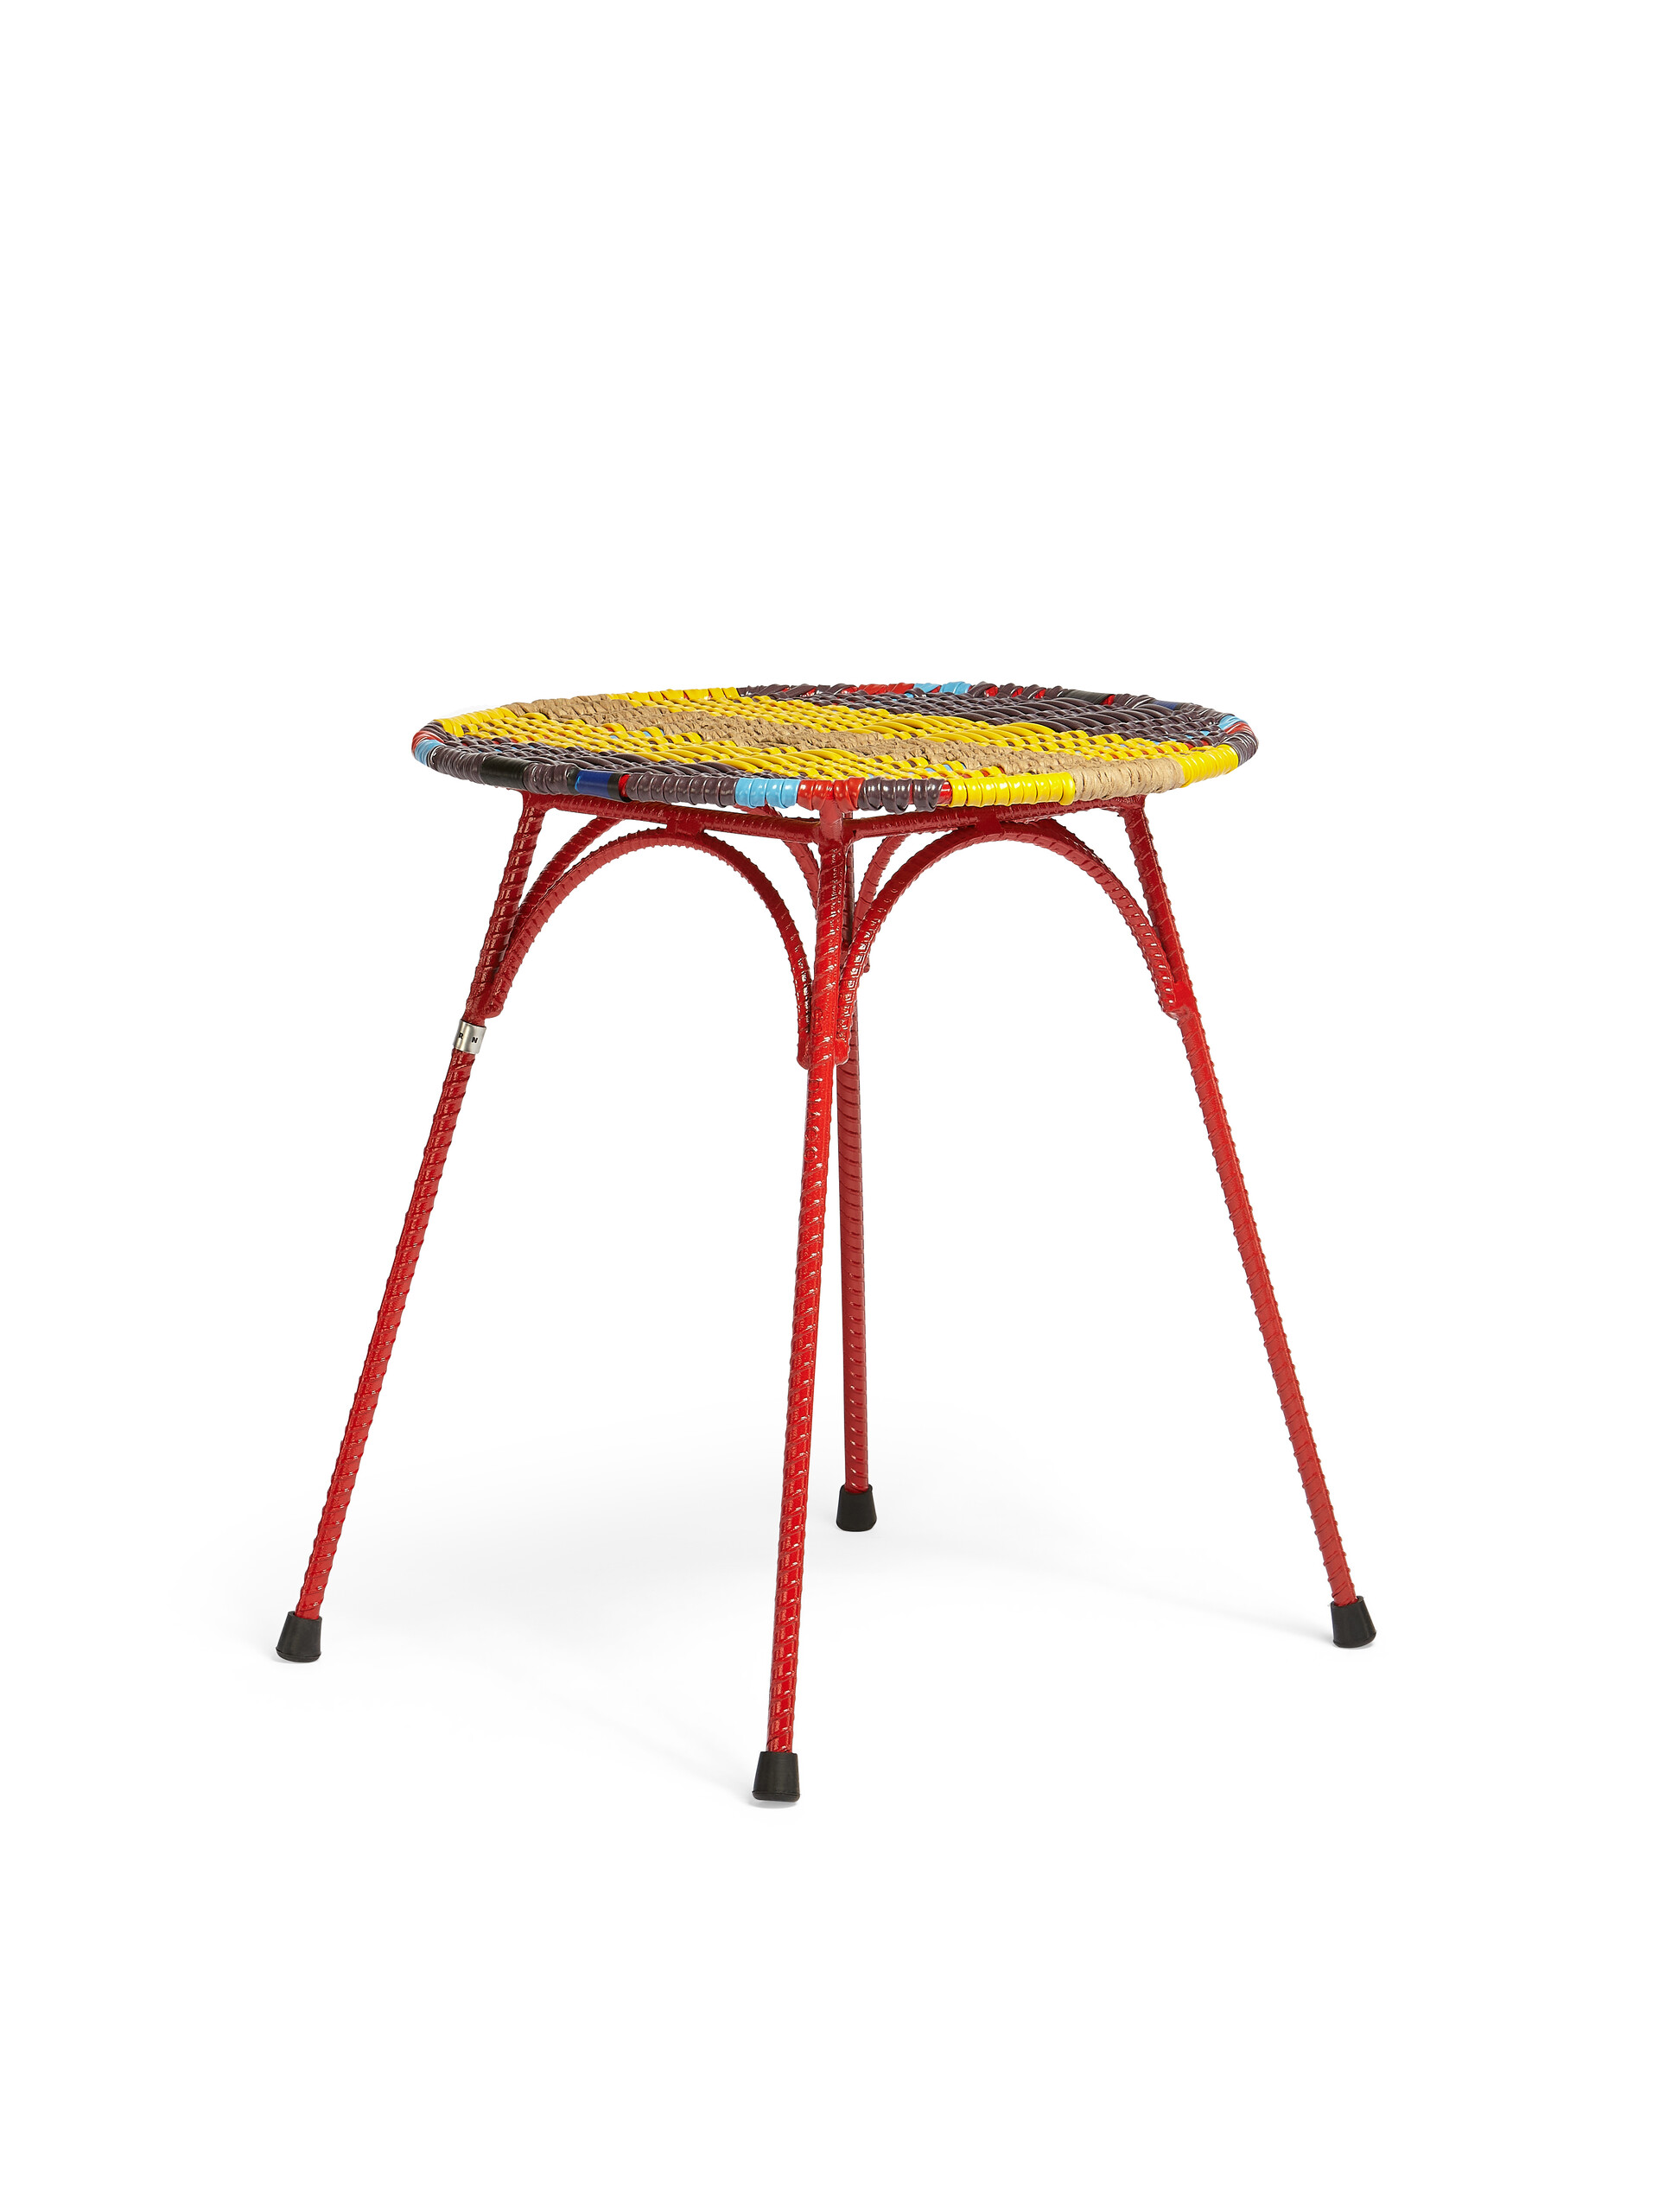 Sgabello-tavolo MARNI MARKET in ferro PVC giallo nero - Arredamento - Image 2